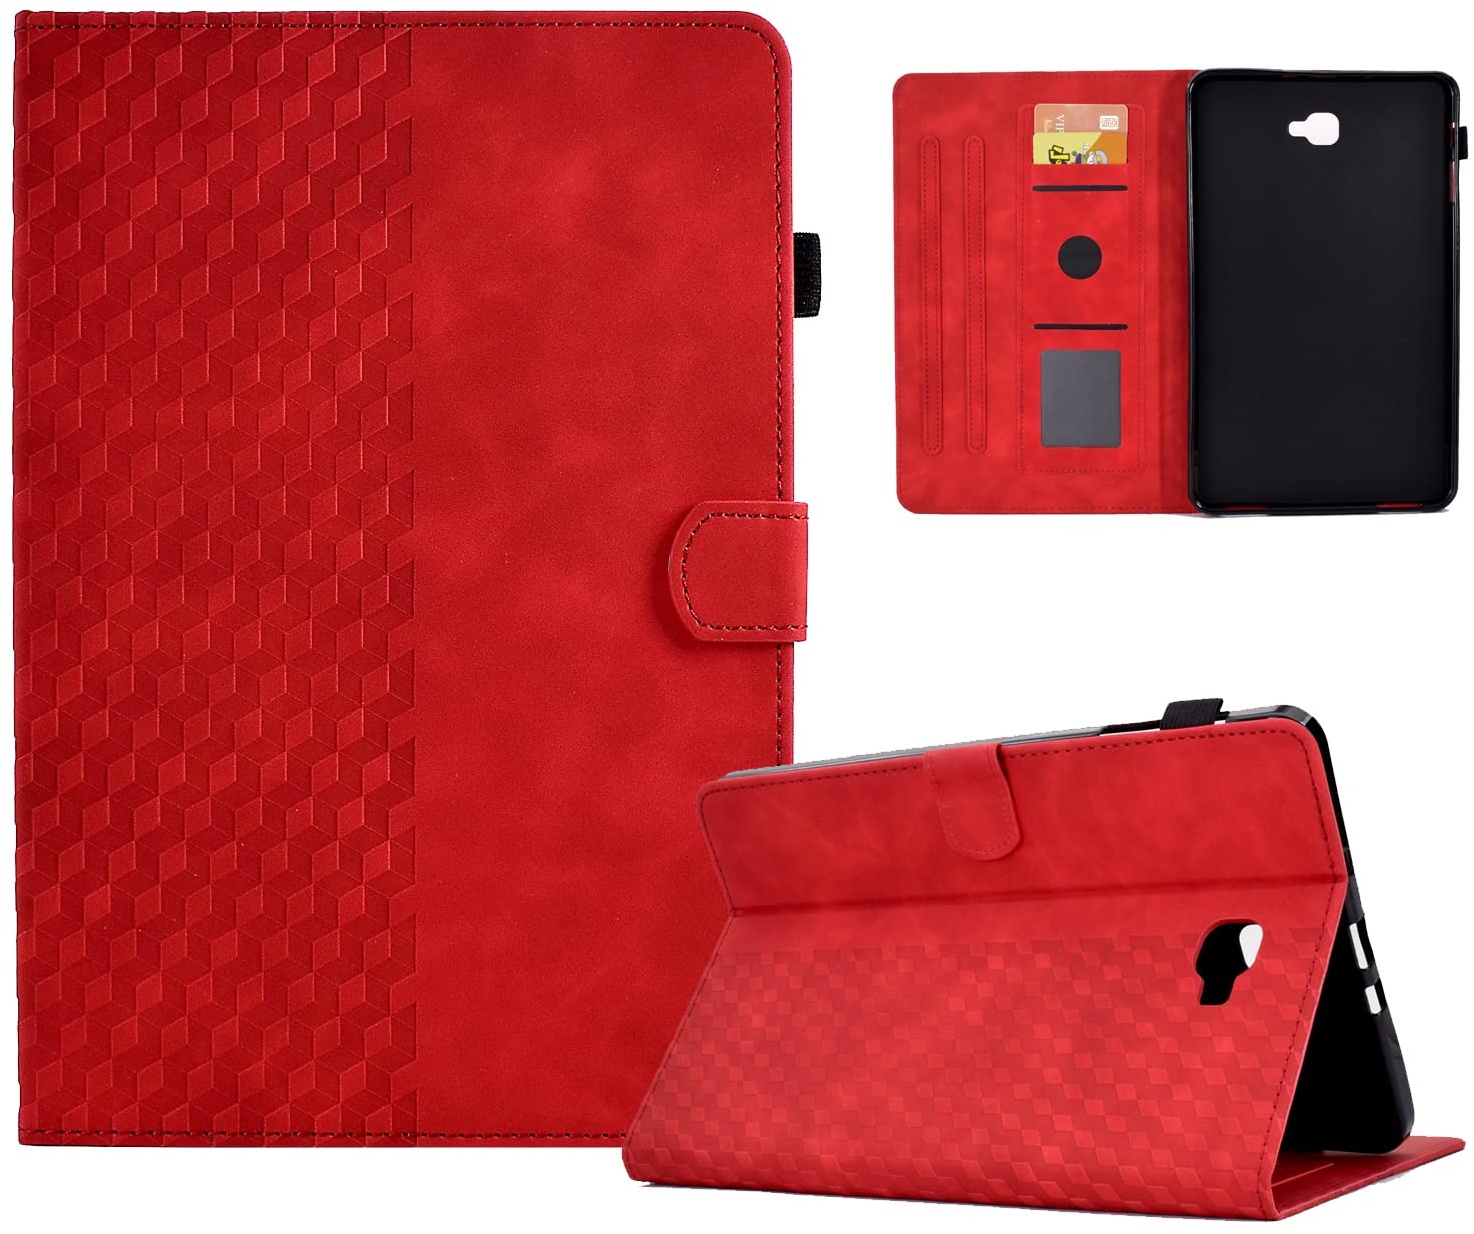 ONETHEFUL Hülle Etui für Samsung Galaxy Tab A / A6 10.1" 2016 T580 T585 TPU Klapp Tasche Schutzhülle Huelle mit Standfunktion Magnetverschlusse für Galaxy Tab A 10.1 Zoll 2016 Rot